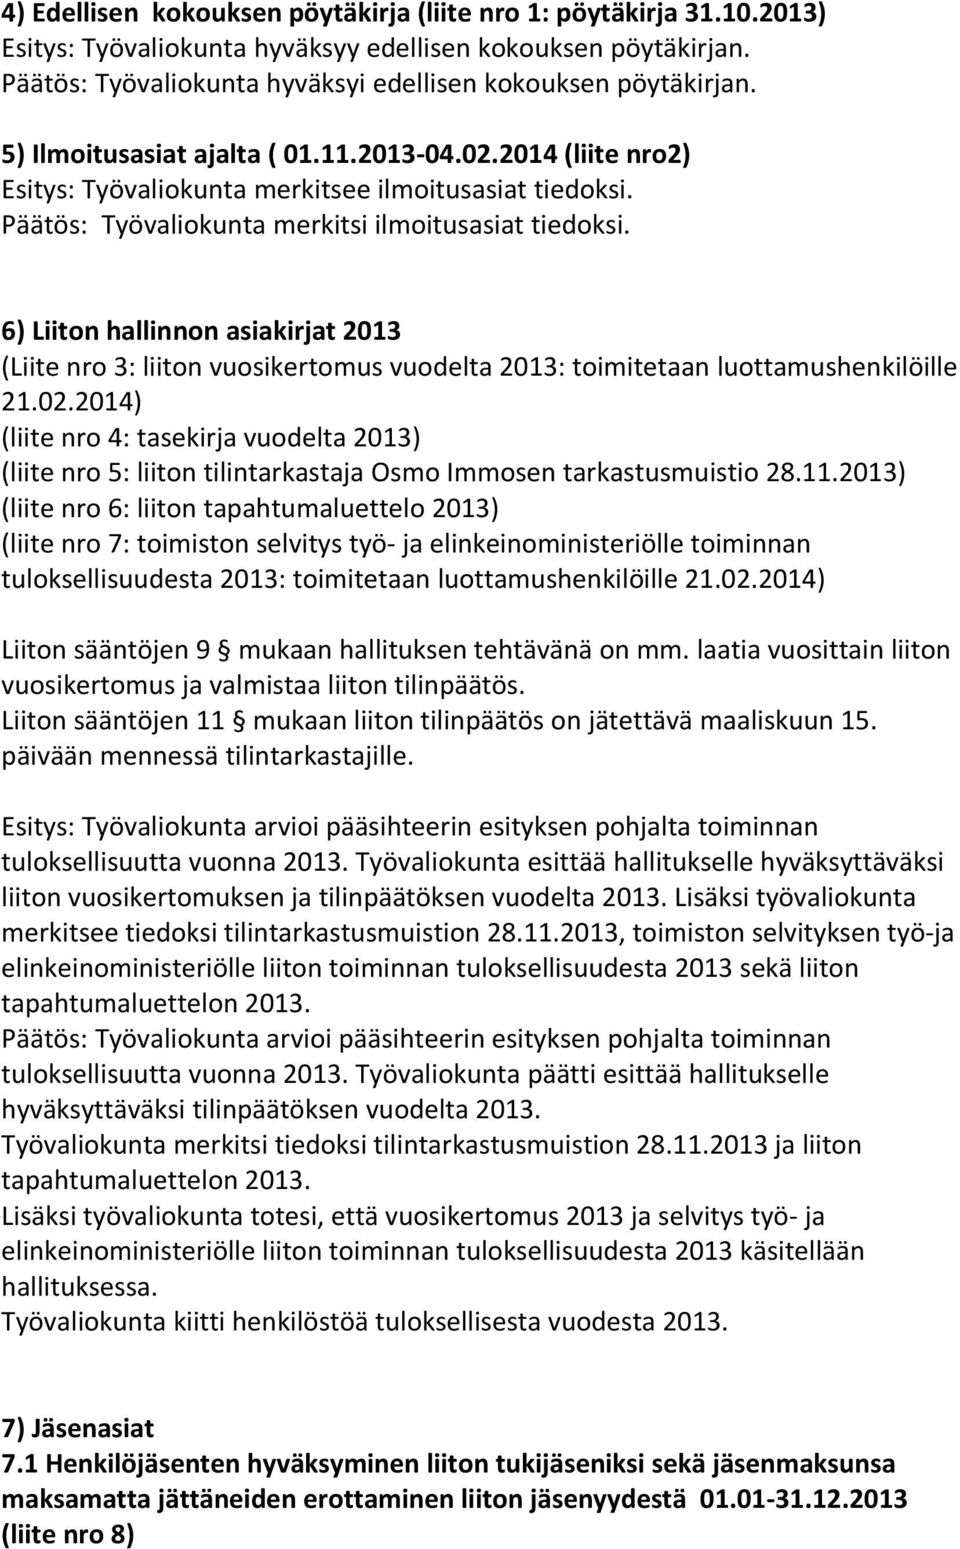 6) Liiton hallinnon asiakirjat 2013 (Liite nro 3: liiton vuosikertomus vuodelta 2013: toimitetaan luottamushenkilöille 21.02.